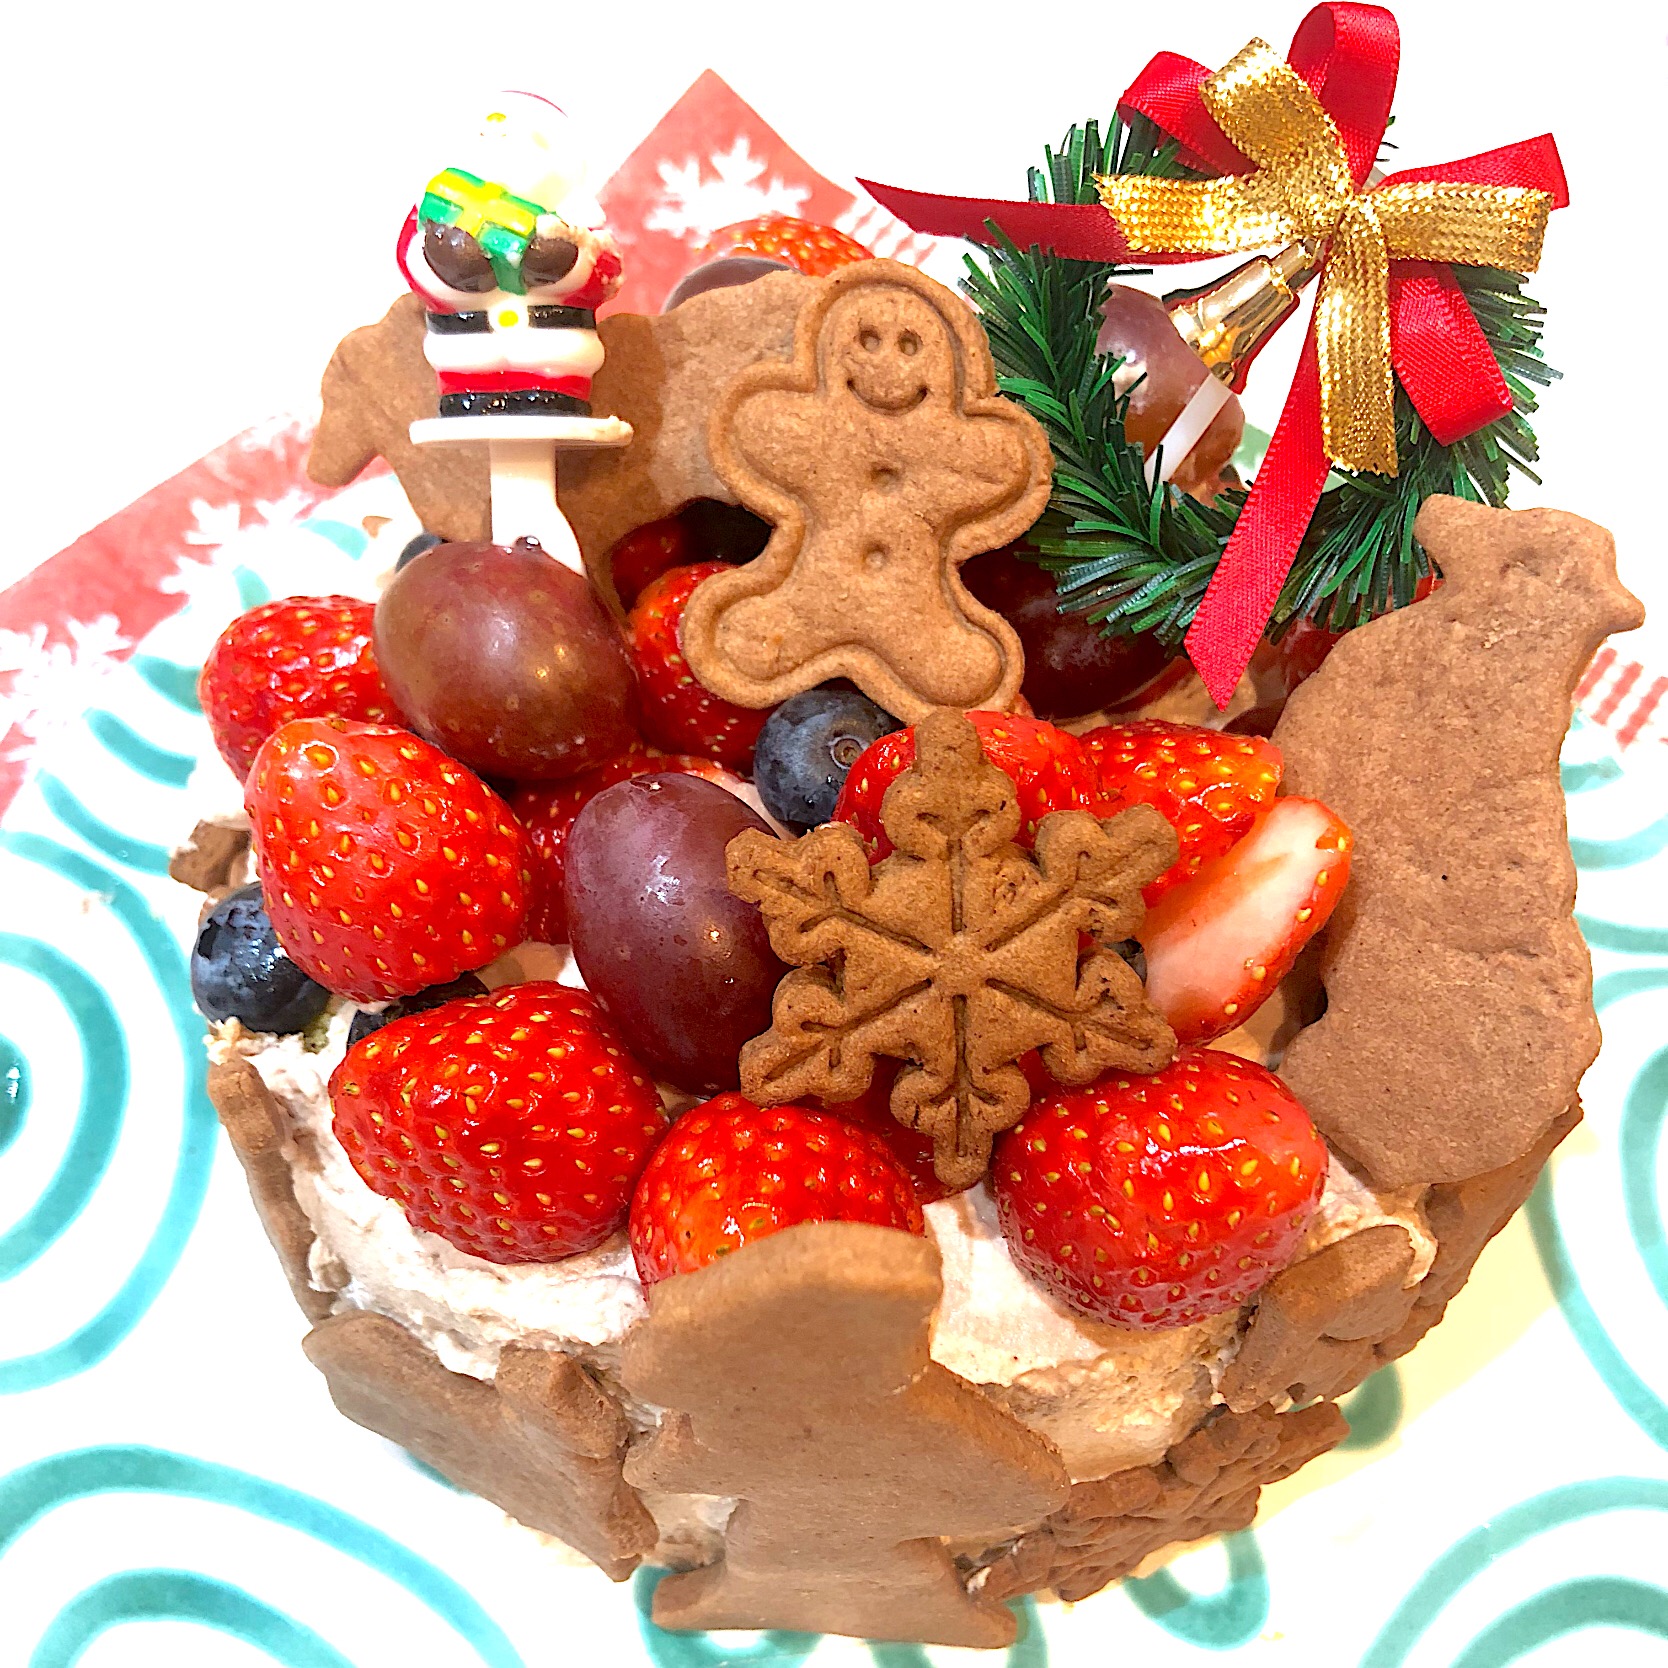 クリスマスケーキ は 4歳の娘と豆腐ココアクッキーから手作り デコレーションも一緒にしました クリスマスパーティーグランプリ ヤマサ醤油株式会社